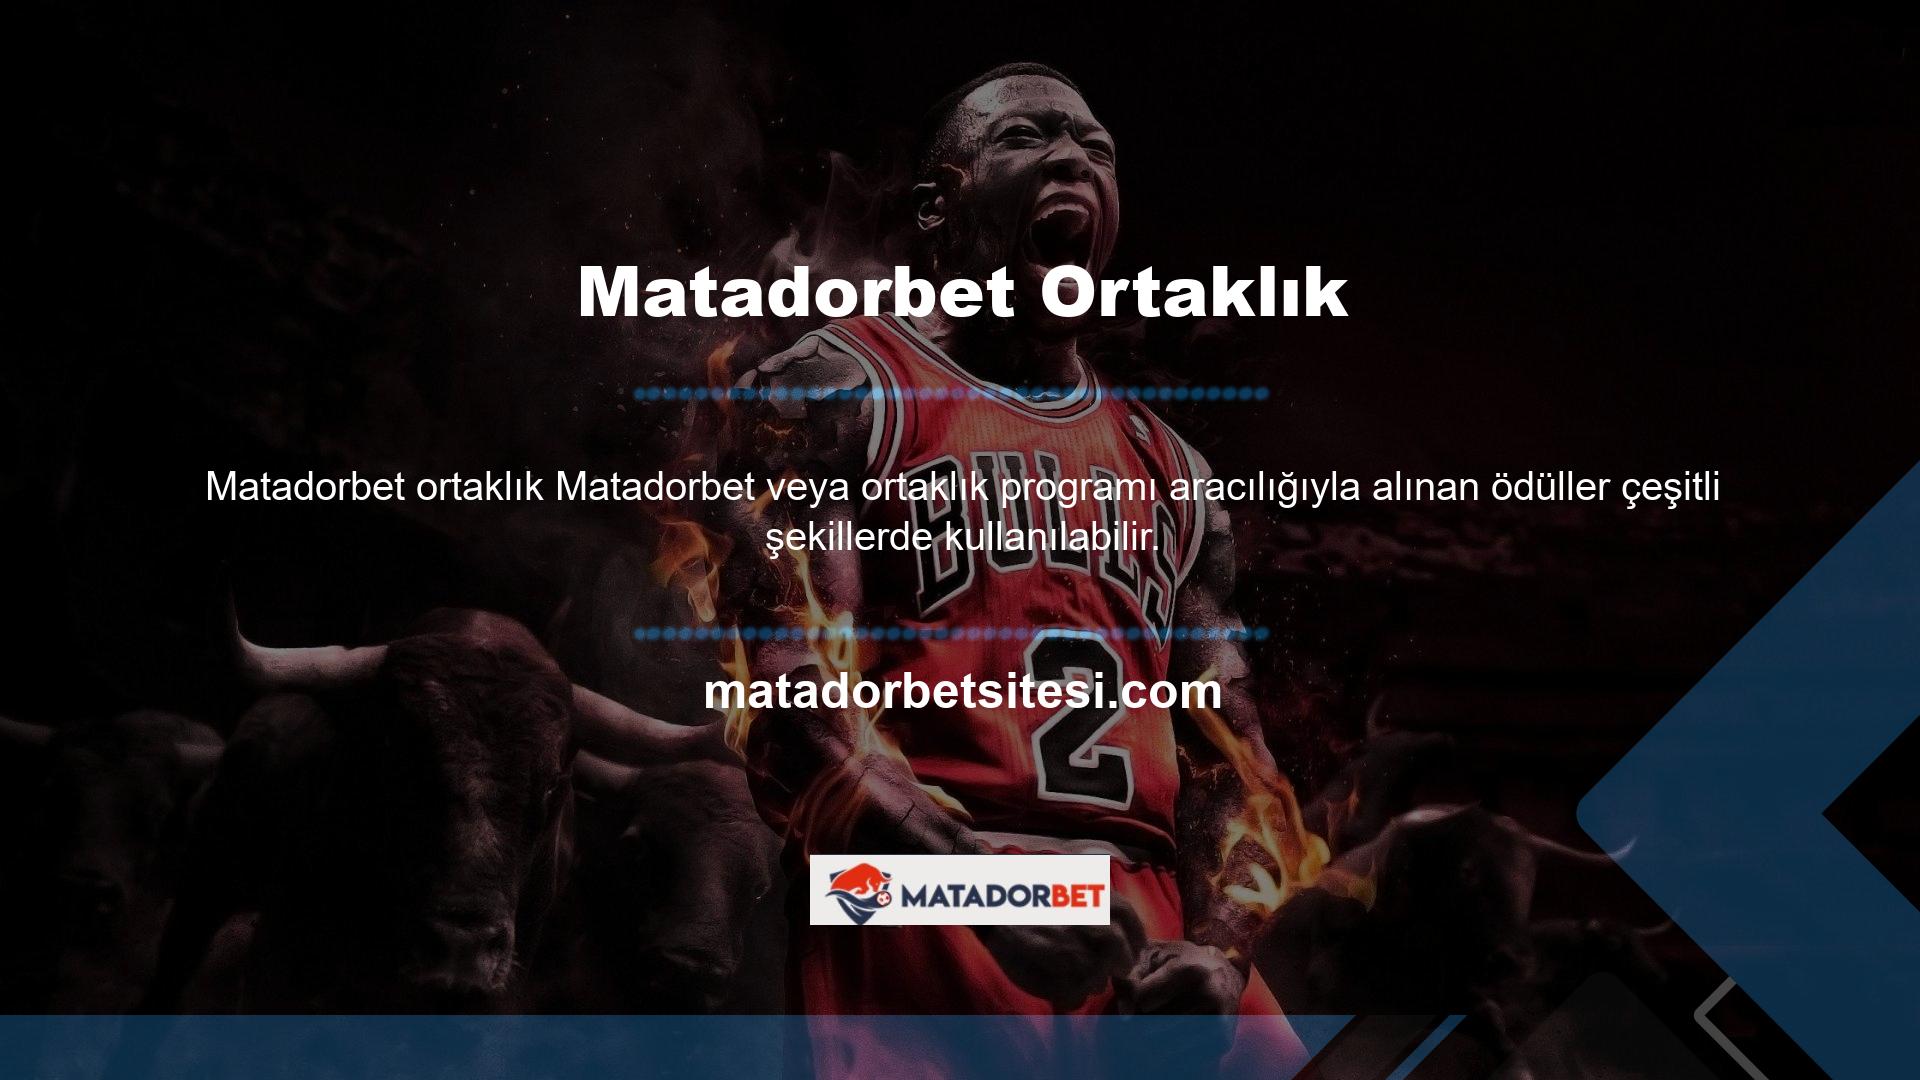 Bahis siteleri denilince akla gelen ilk isimlerden biri olan Matadorbet Oyun Sitesi, online oyun sektöründe büyük bir üne sahiptir